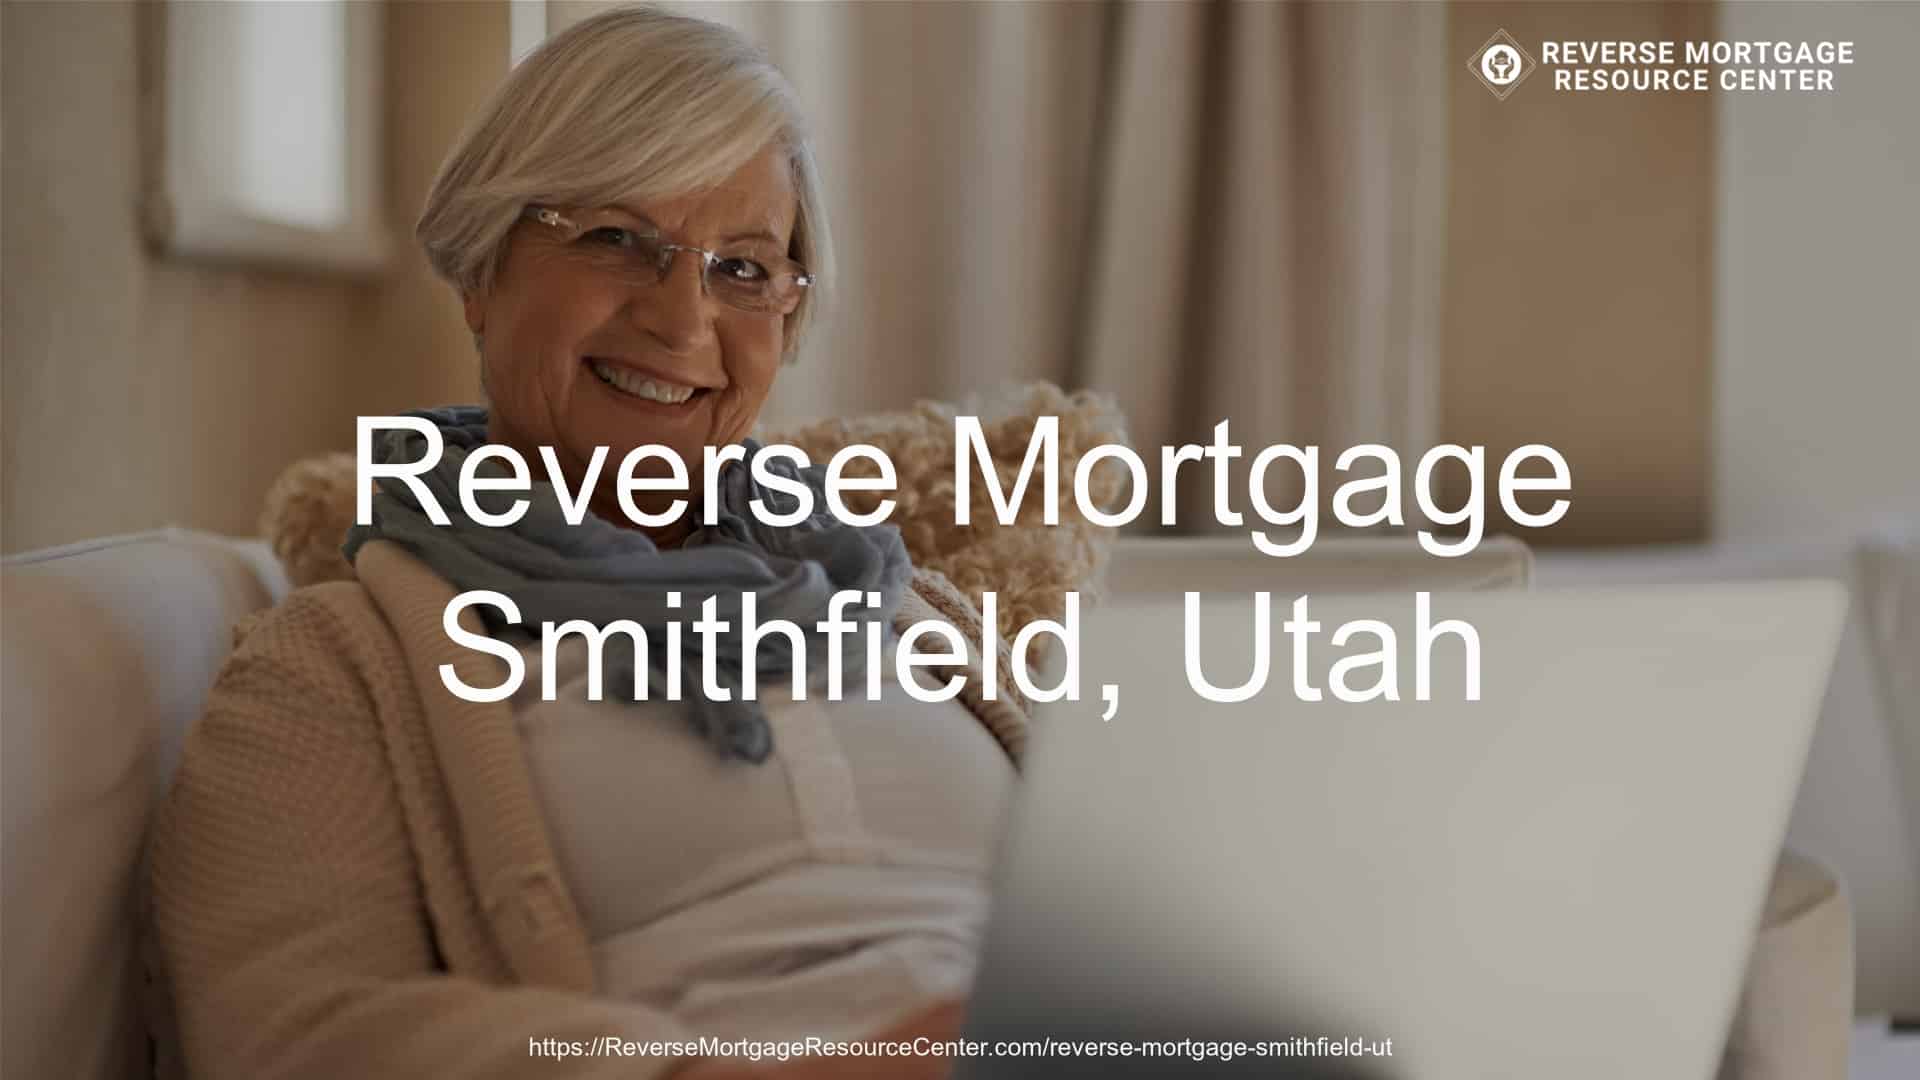 Reverse Mortgage Loans in Smithfield Utah